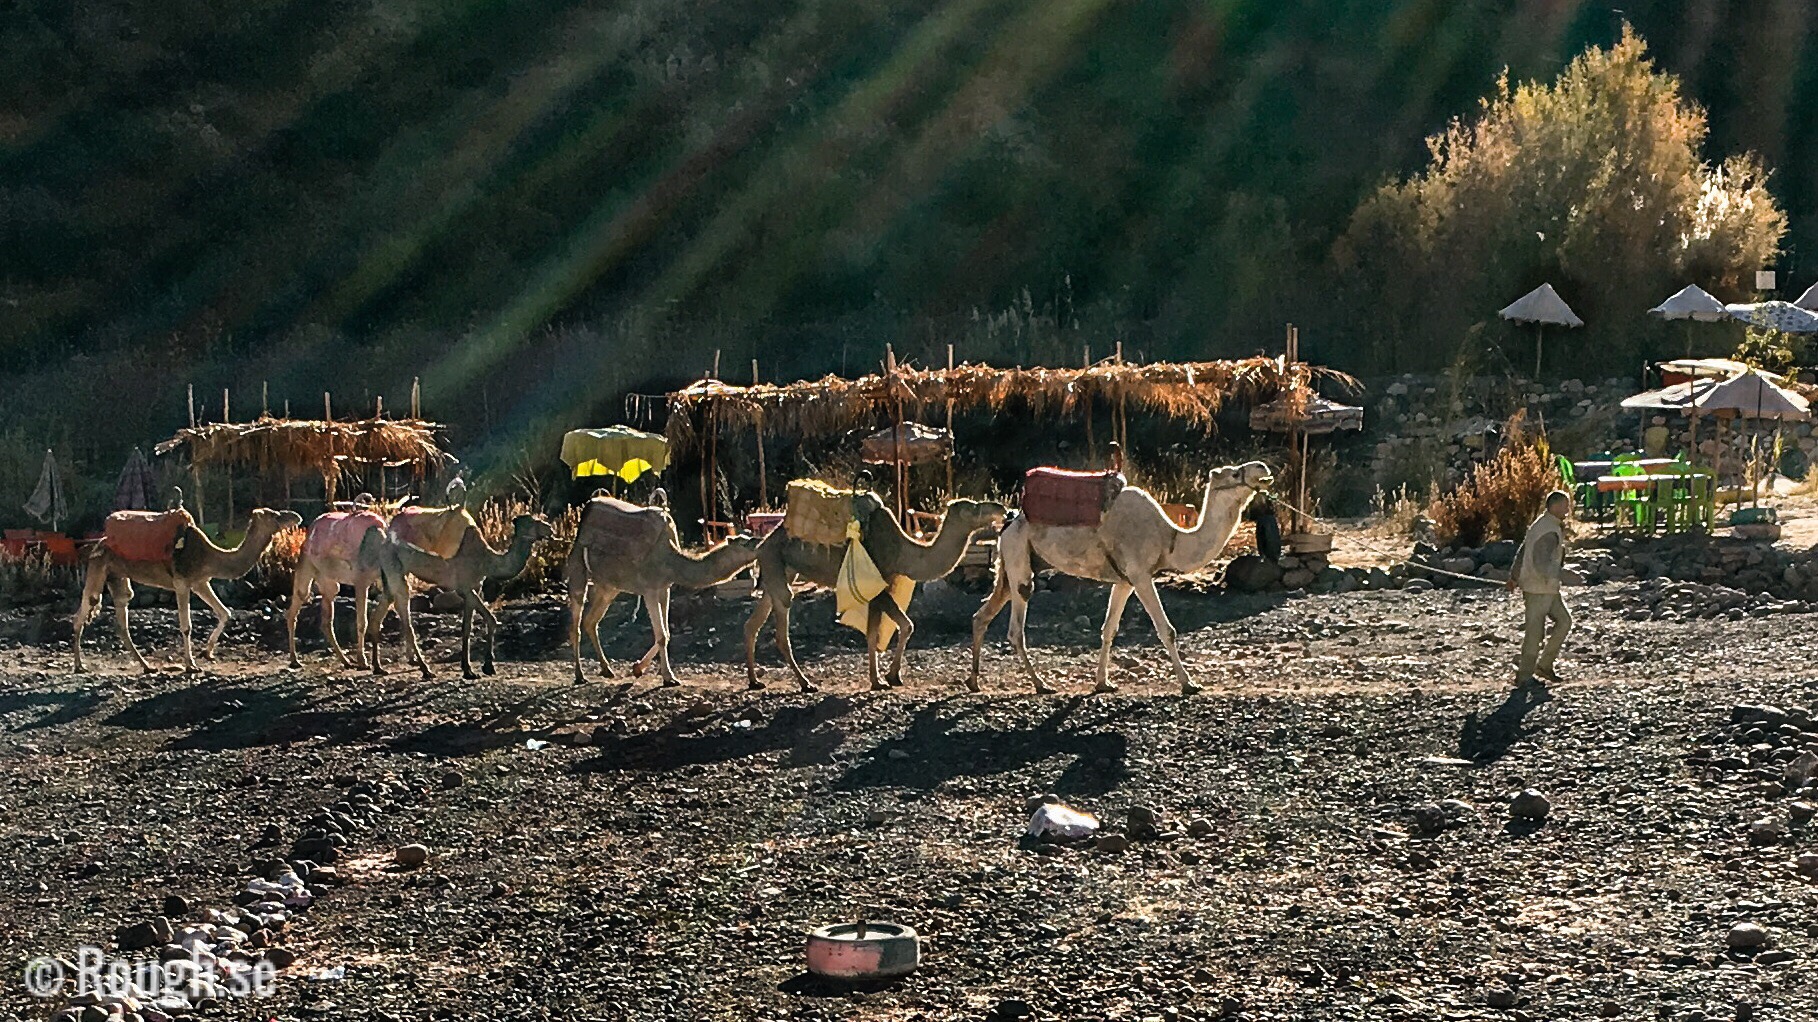 Kameler i Marocko småbilder